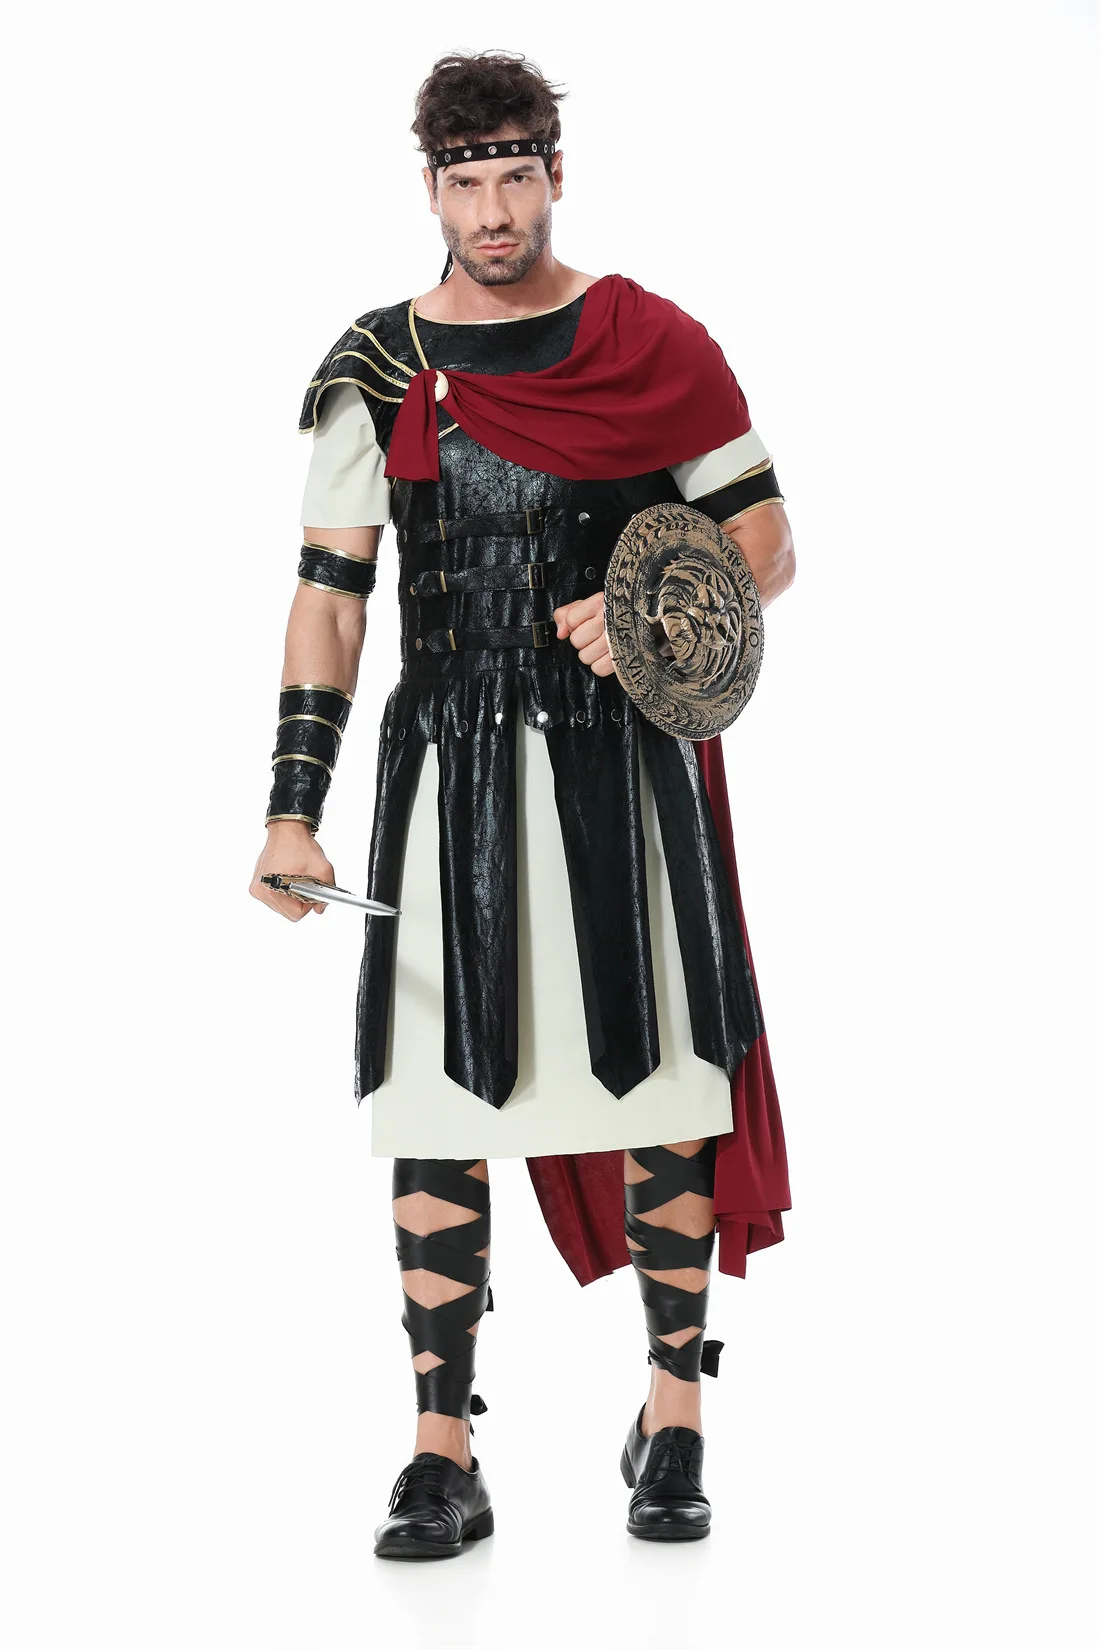 Детский костюм Древнеримского воина, косплей взрослого мужчины, костюм Спартанского воина